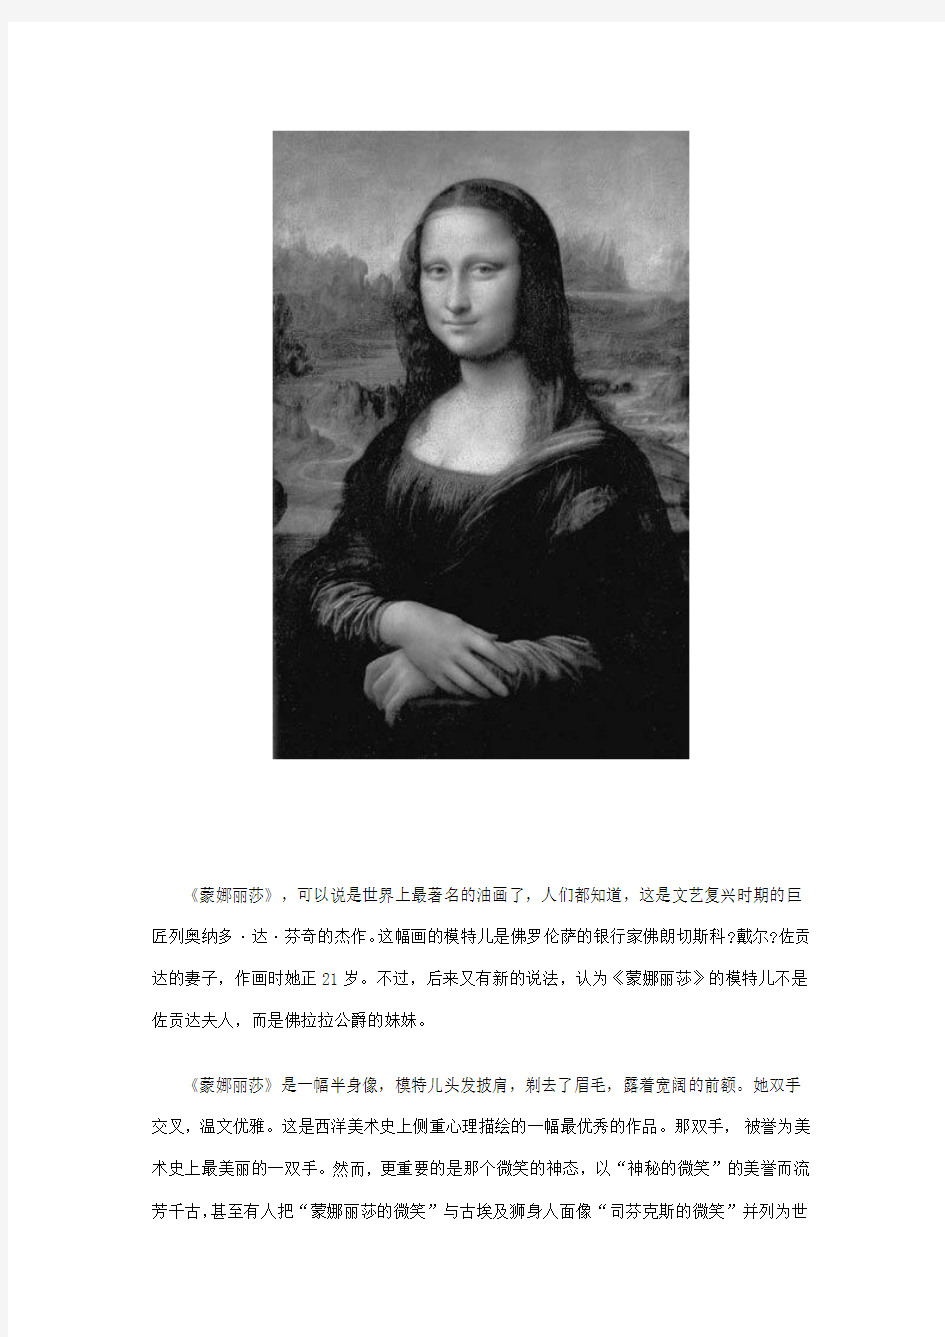 《蒙娜丽莎》,可以说是世界上最著名的油画了,人们都知